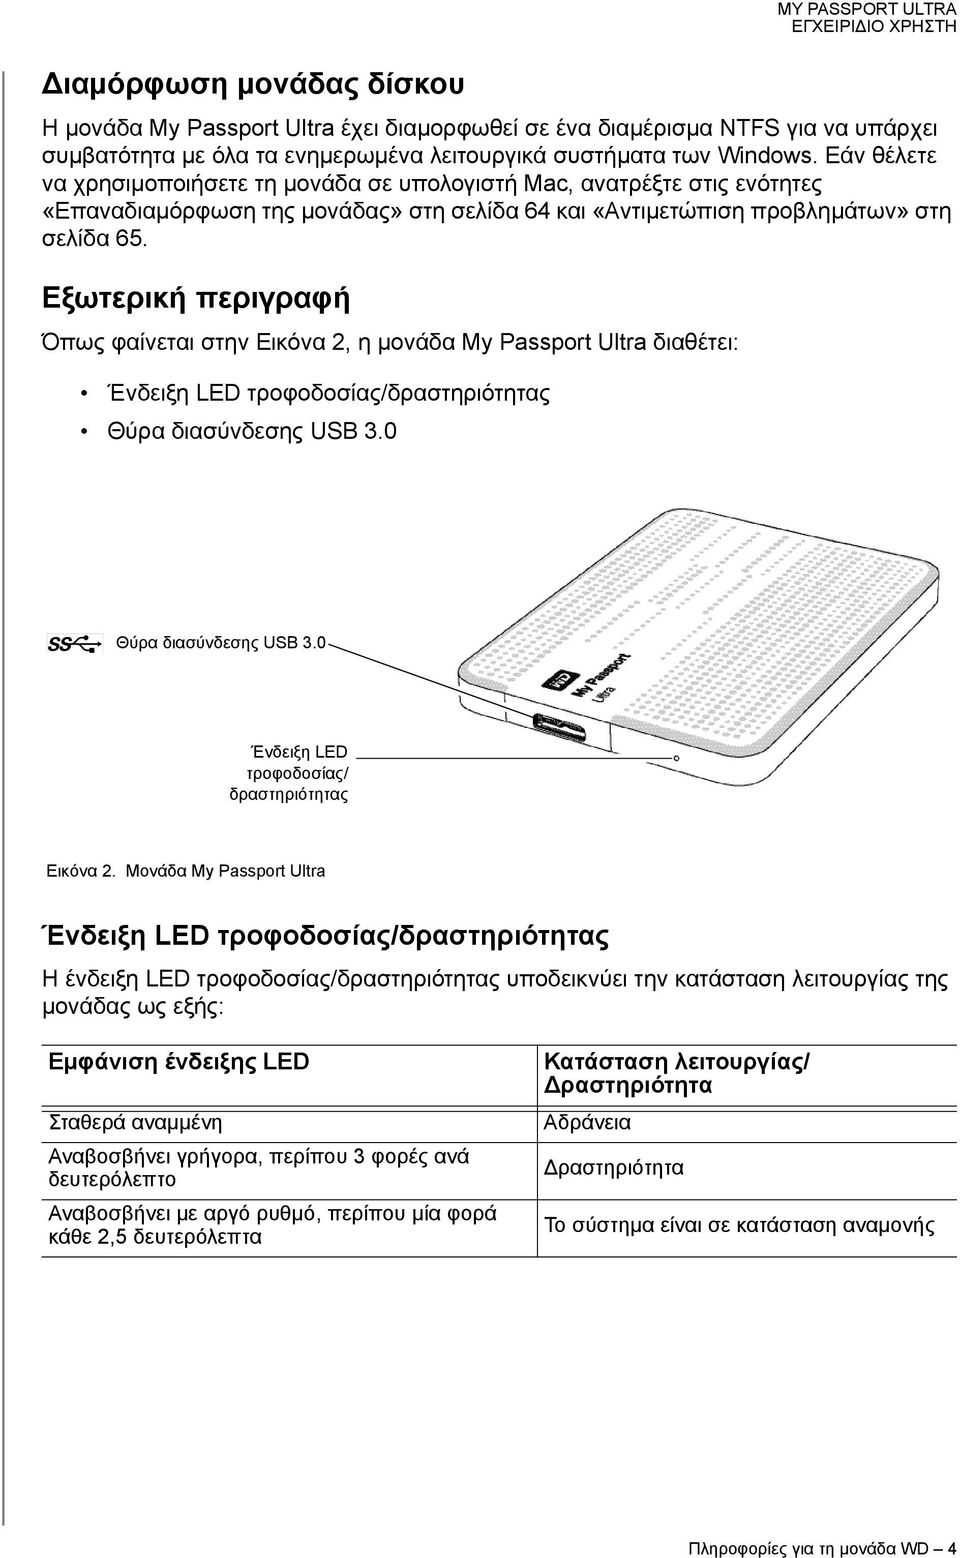 Εξωτερική περιγραφή Όπως φαίνεται στην Εικόνα 2, η μονάδα My Passport Ultra διαθέτει: Ένδειξη LED τροφοδοσίας/δραστηριότητας Θύρα διασύνδεσης USB 3.0 Θύρα διασύνδεσης USB 3.